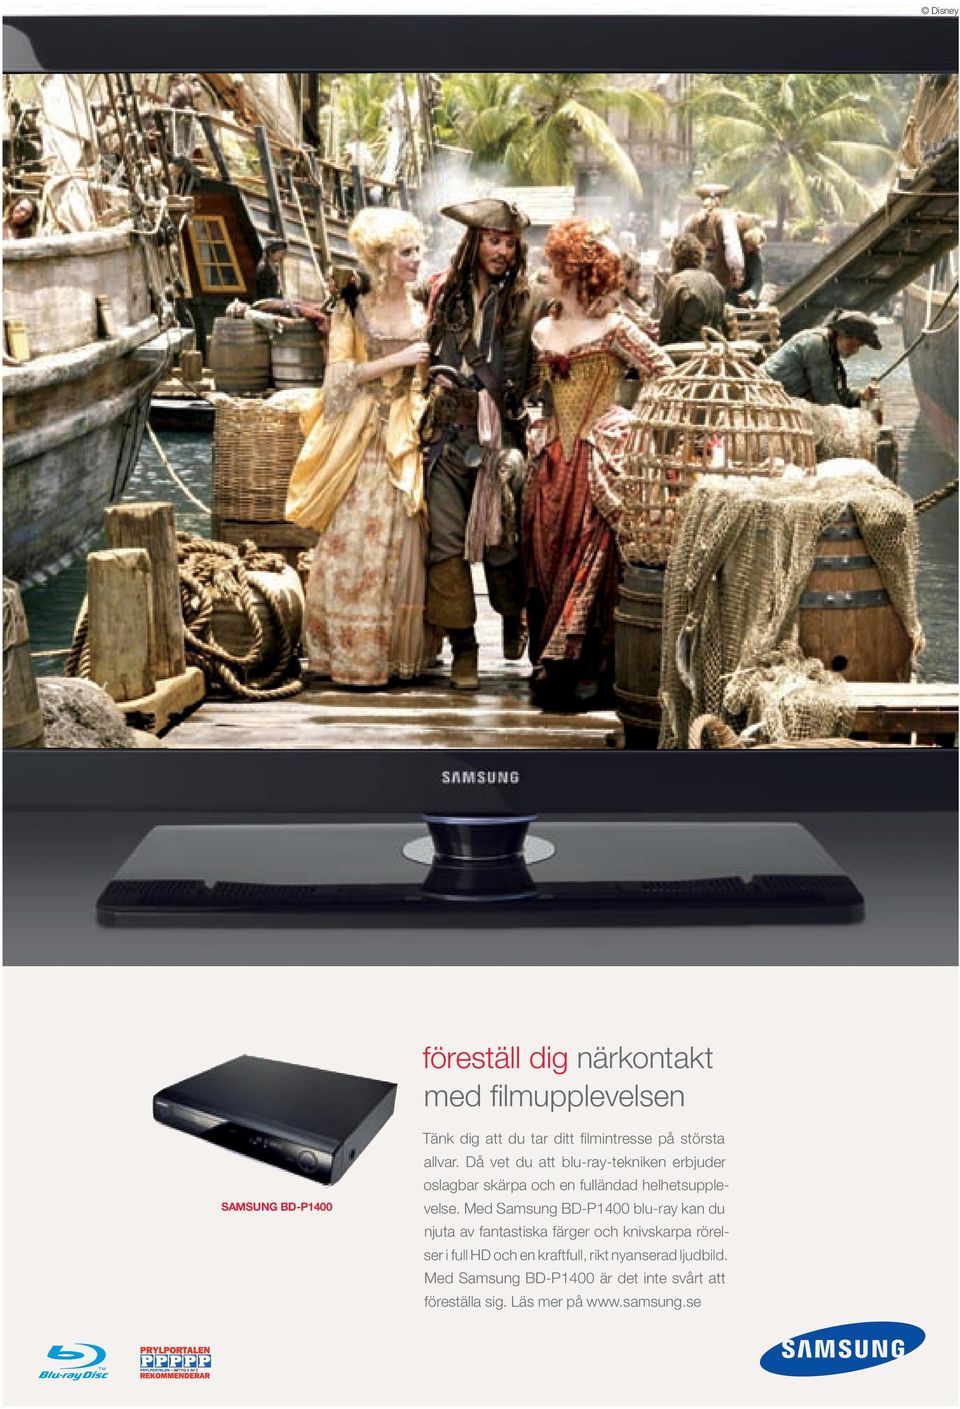 Med Samsung BD-P1400 blu-ray kan du njuta av fantastiska färger och knivskarpa rörelser i full HD och en